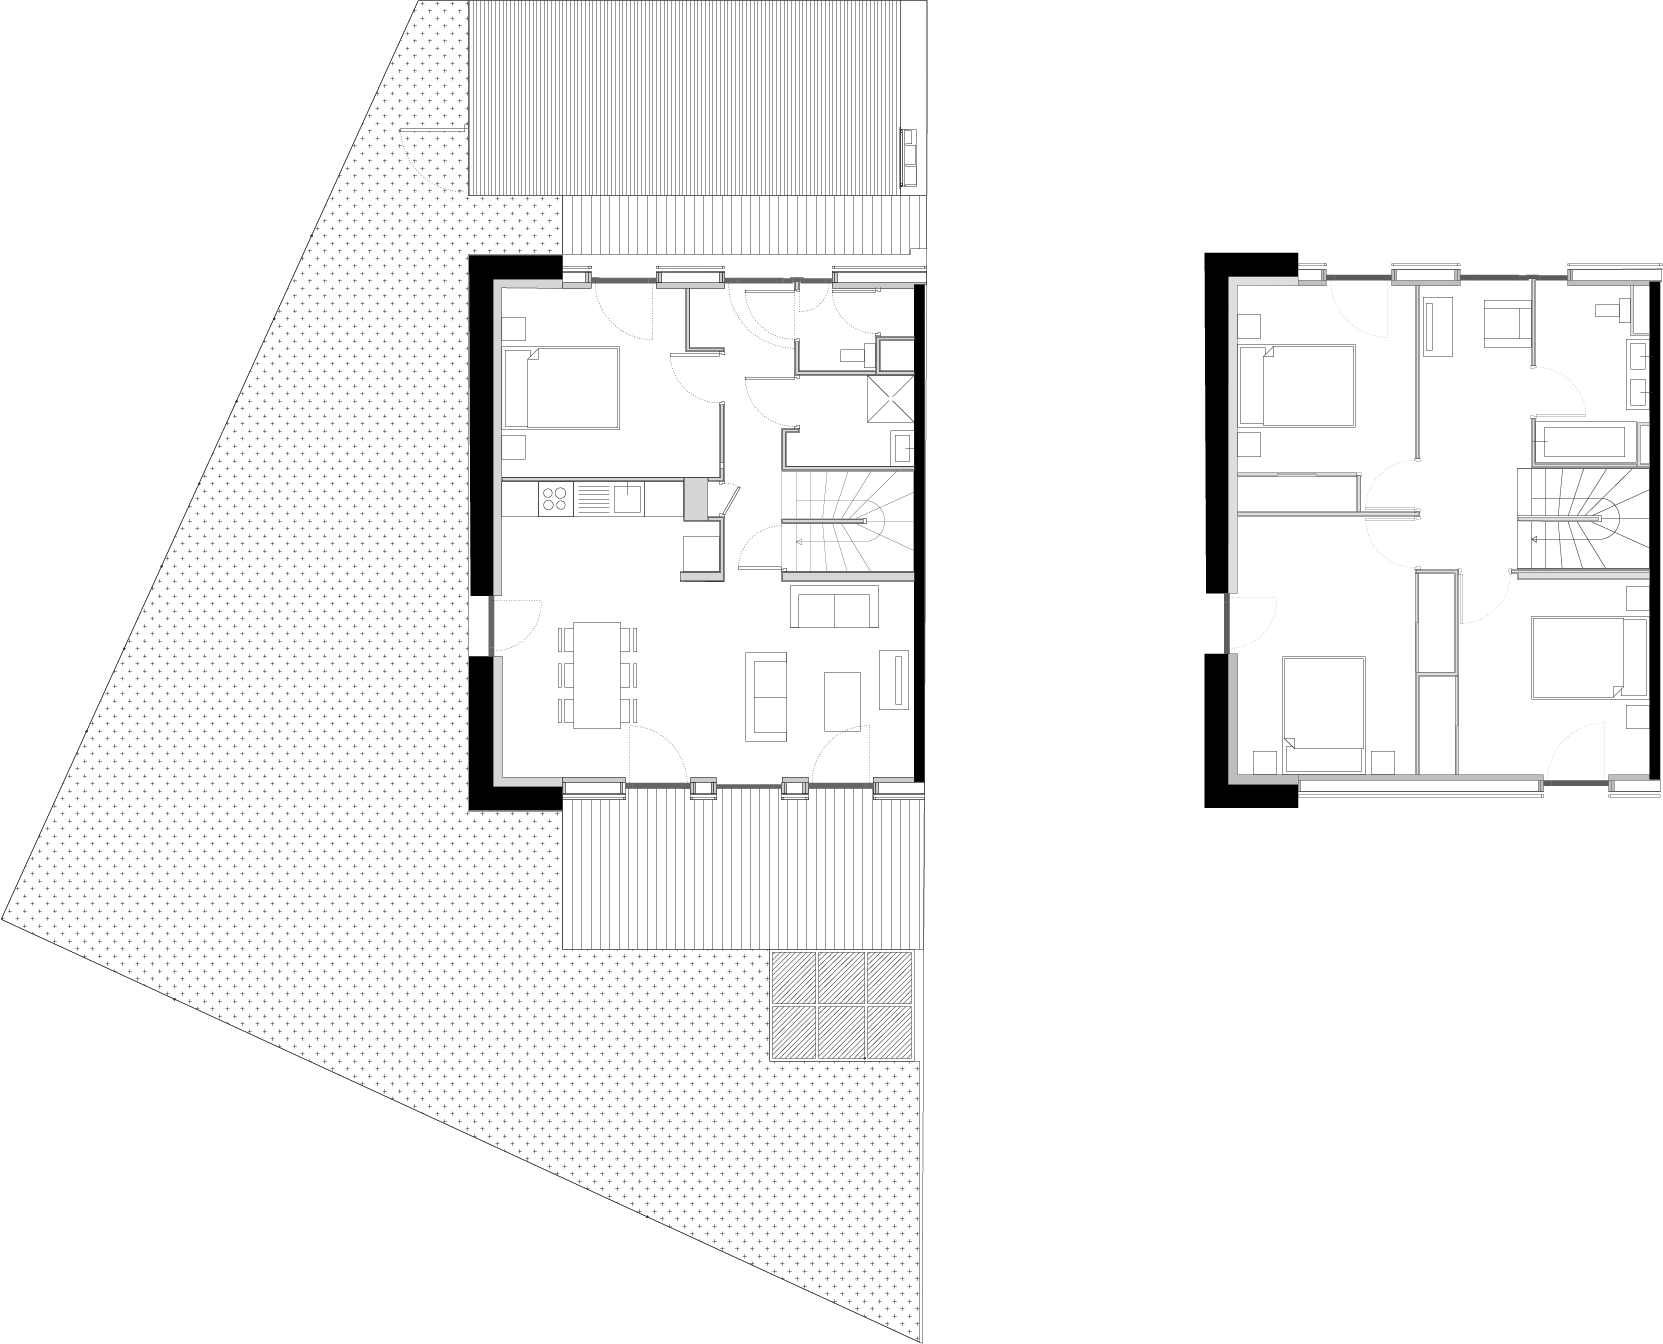 Plan d'un des duplex du bâtiment A / Atelier du Rouget Simon Teyssou & associés